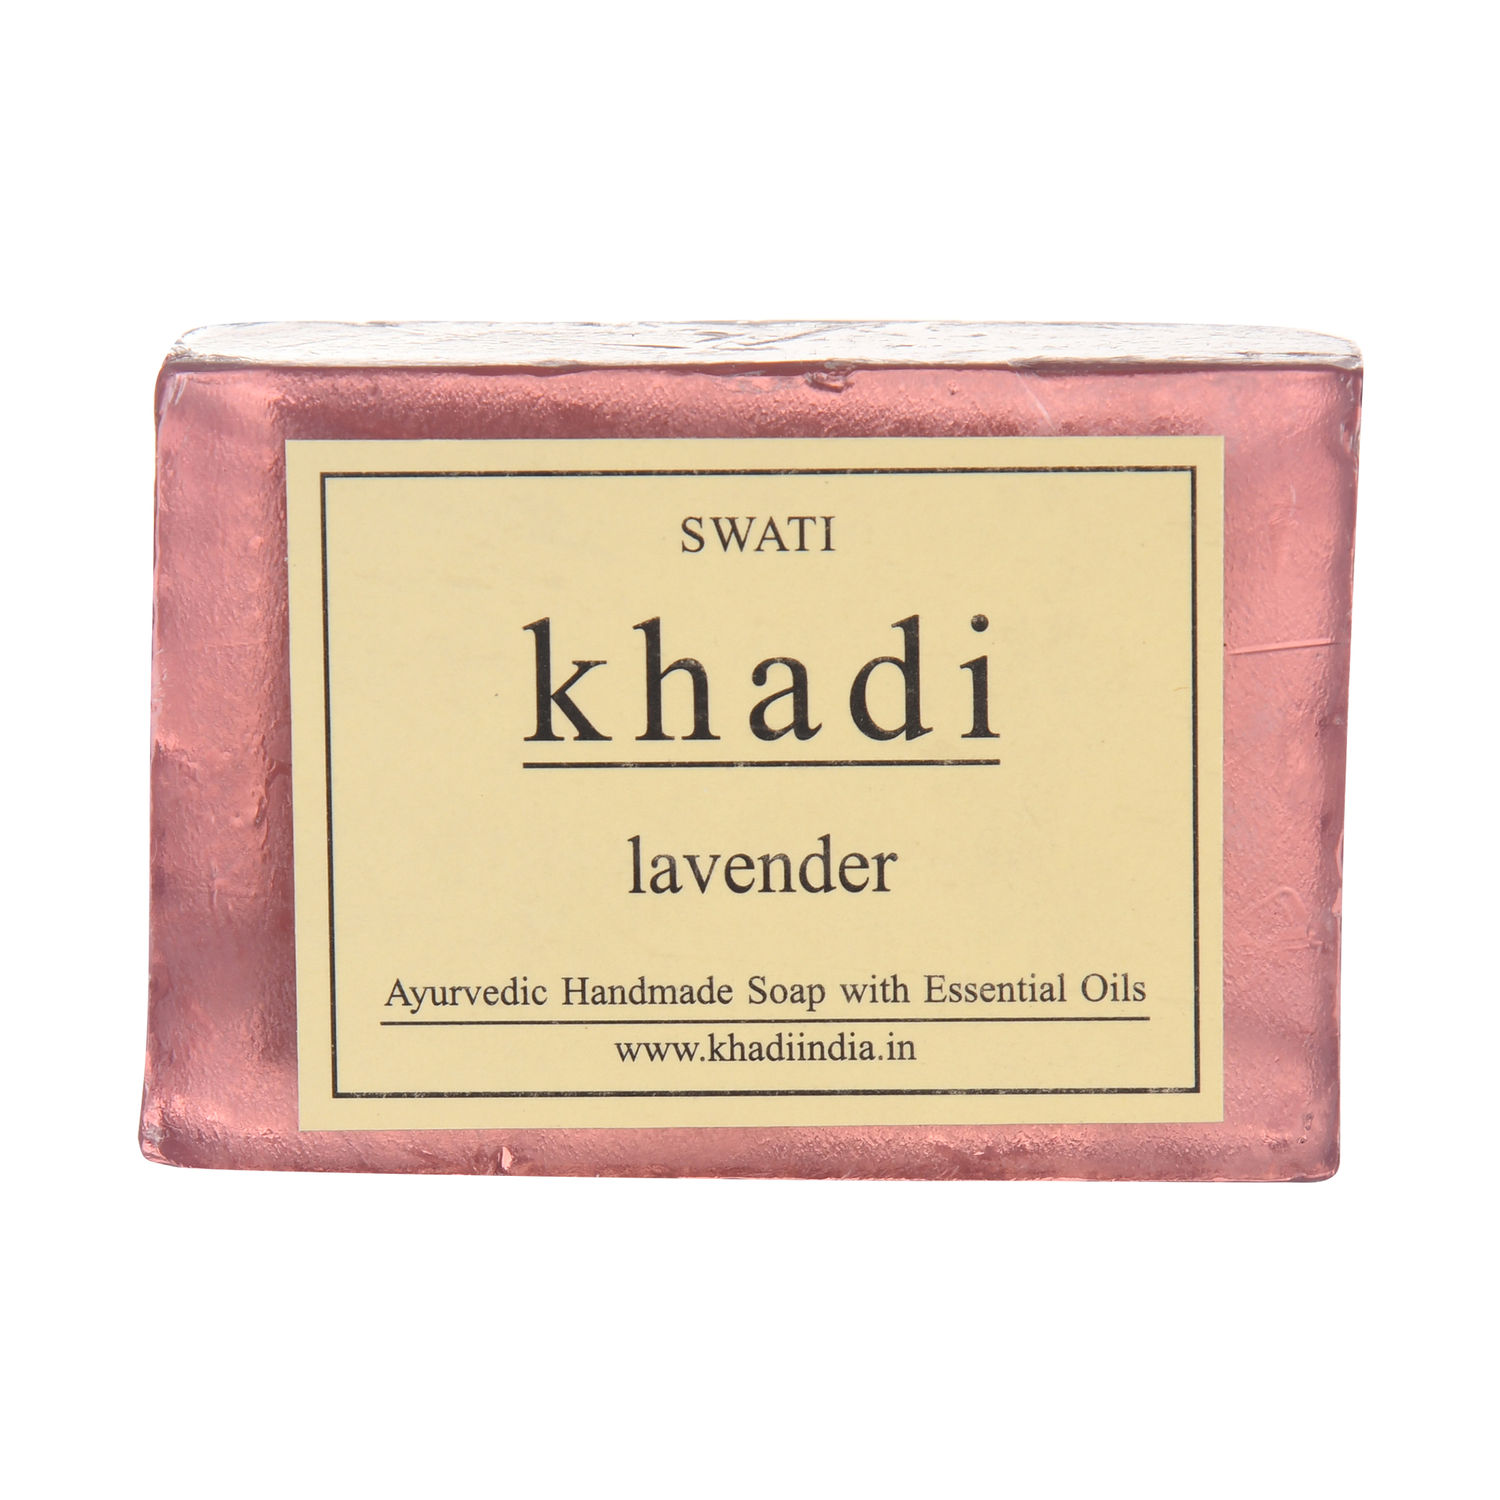 Buy Swati Khadi Ayurvedic Handmade Soap LAVENDER - Purplle